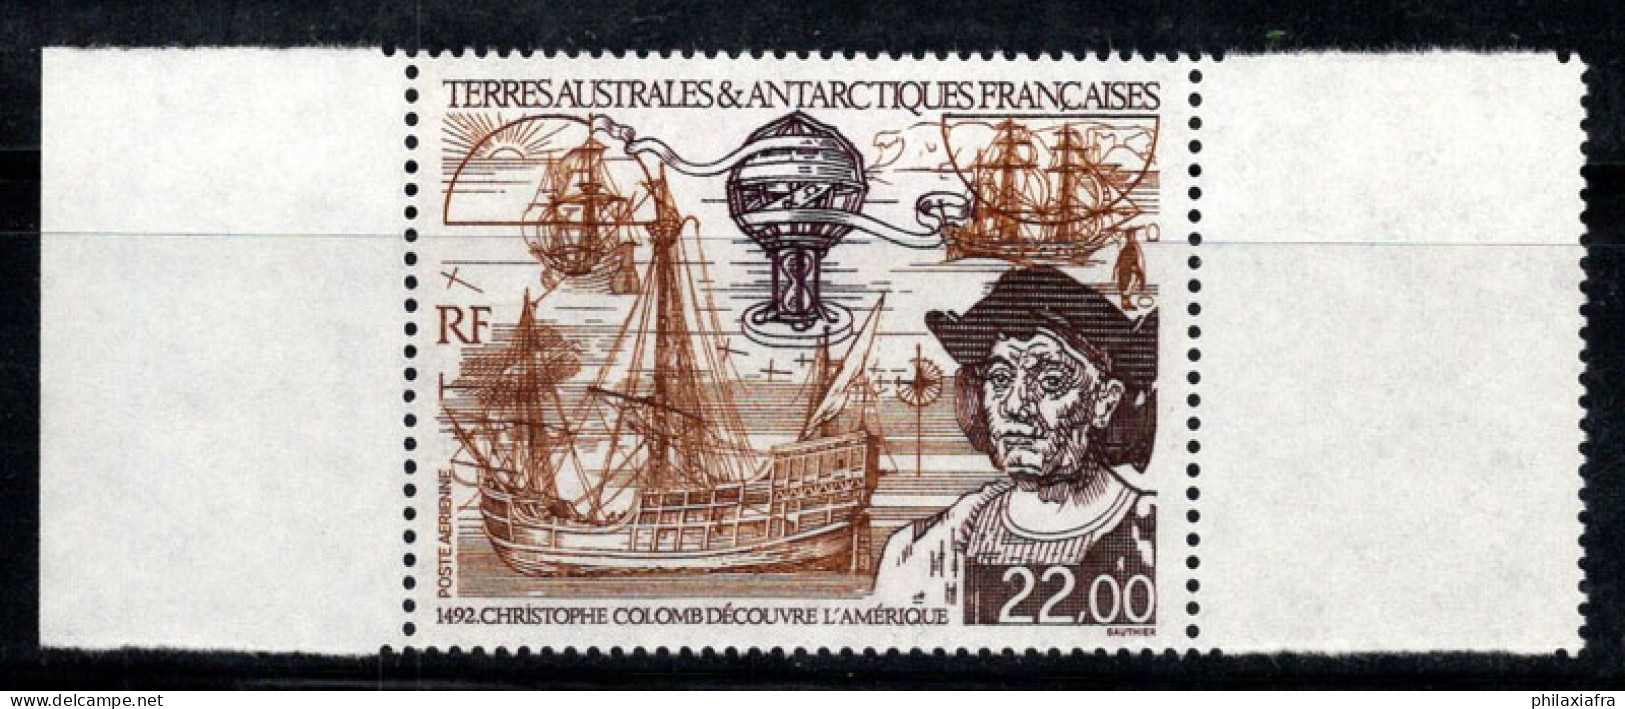 Territoire Antarctique Français TAAF 1992 Mi. 291 Neuf ** 100% Poste Aérienne 22.00 (Fr), C.Colombo - Unused Stamps